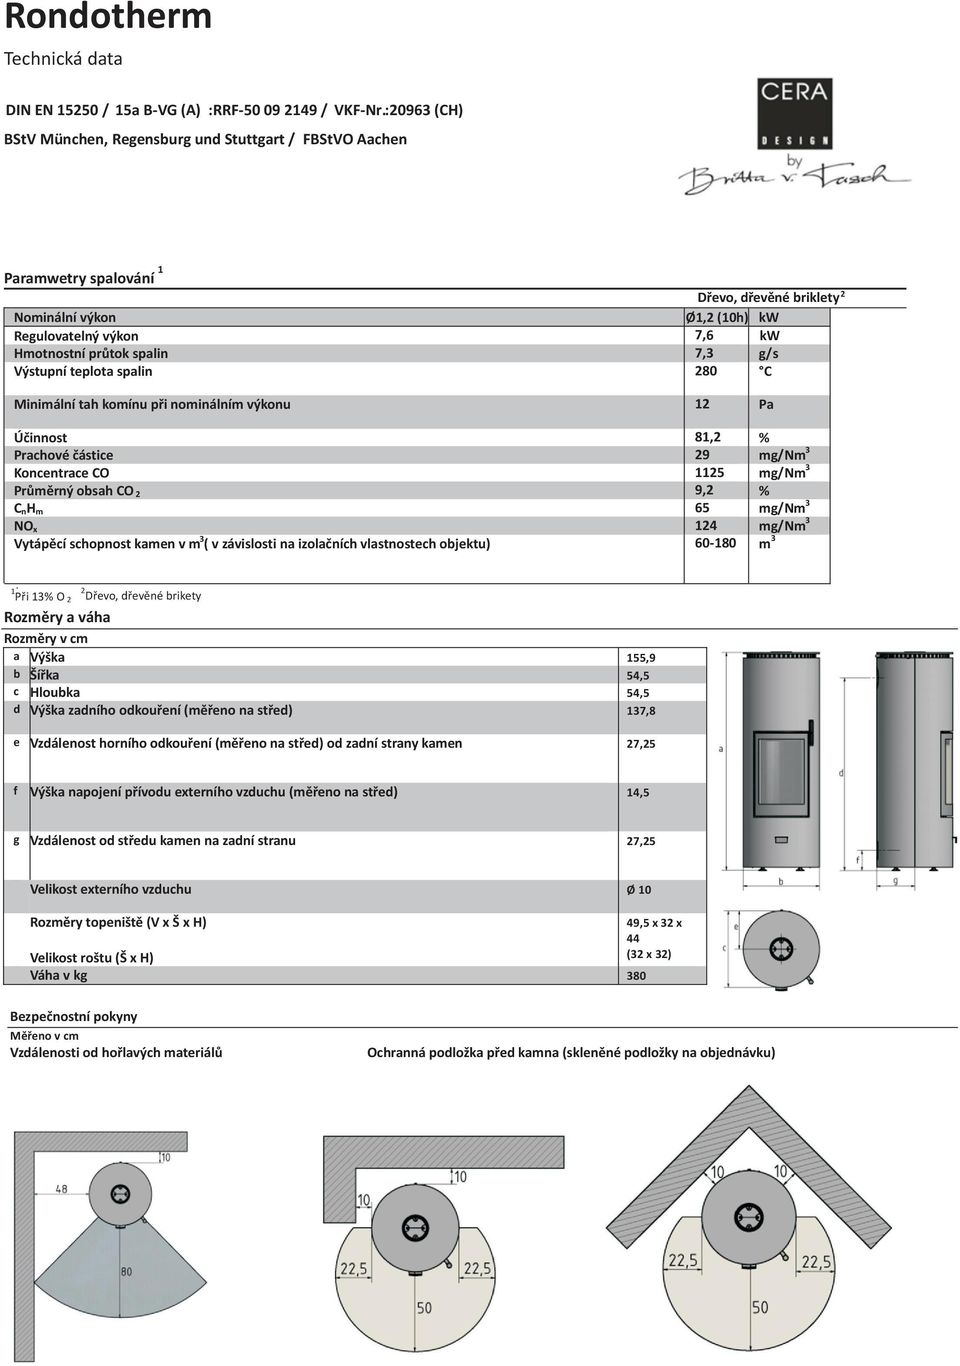 kw g/s Výstupní teplota spalin 280 C Minimální tah komínu při nominálním výkonu 12 Pa Účinnost 81,2 % Prachové částice 29 mg/nm 3 Koncentrace CO 1125 mg/nm 3 Průměrný obsah CO 2 9,2 % C nh m 65 mg/nm